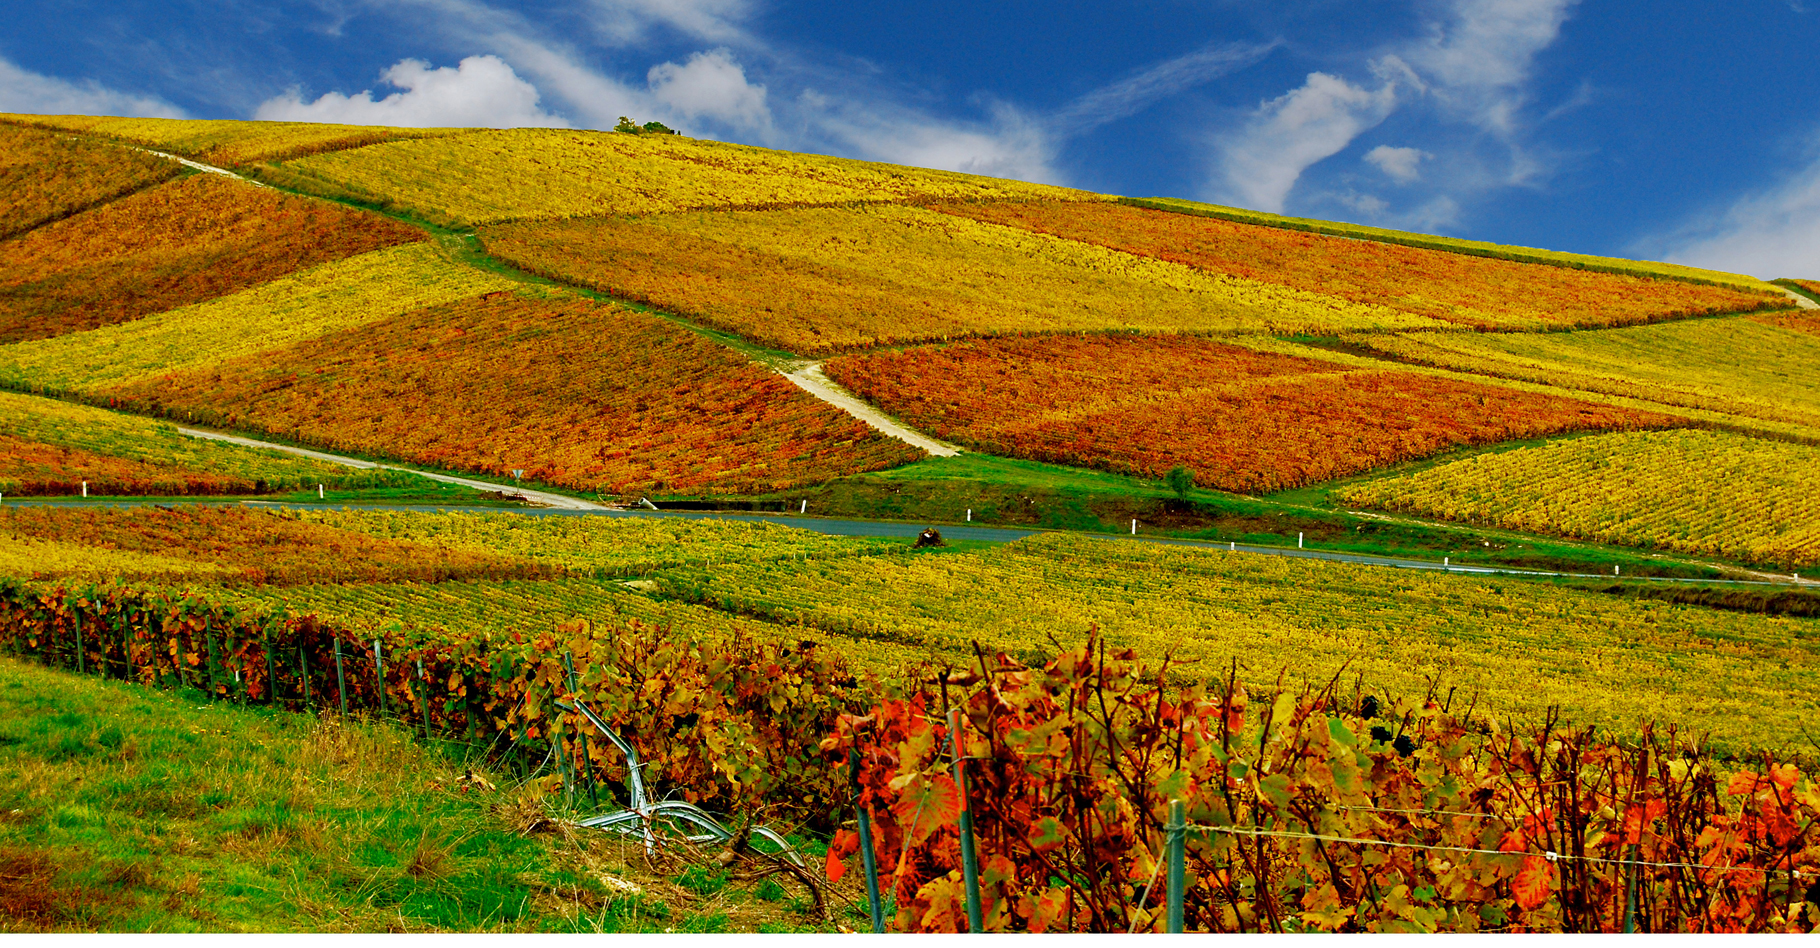 Vignobles de Champagne en automne. © Vincent Brassinne - CC BY-NC 2.0